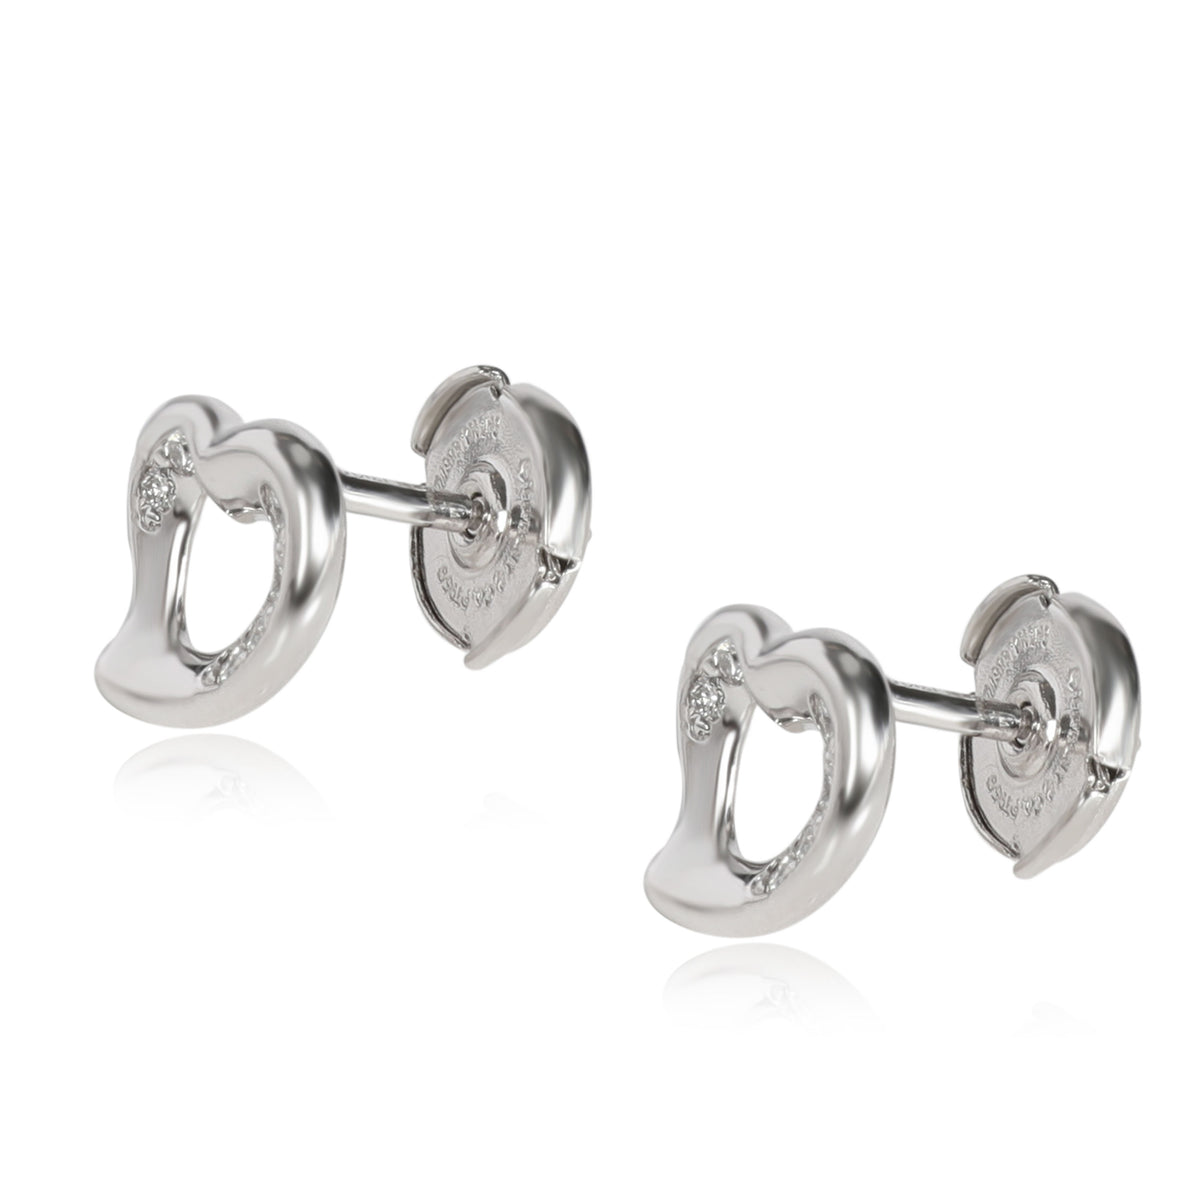 Tiffany & Co. Elsa Peretti Open Heart Diamond Earrings in Platinum 0.20 CTW